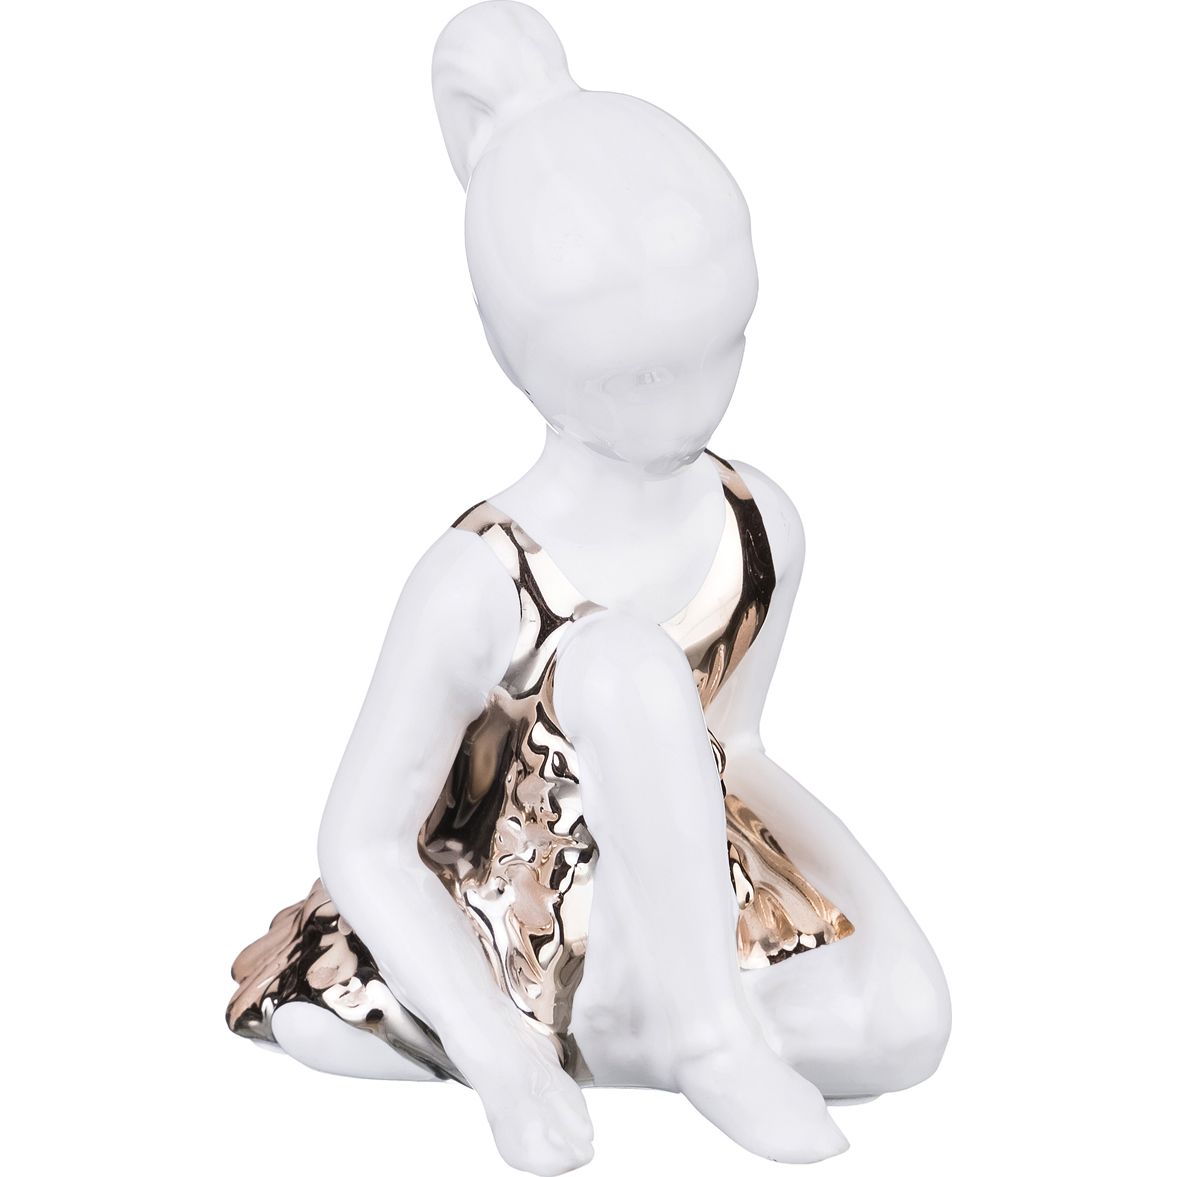 Фигурка Балерина (8х9х11 см), размер 8х9х11 см, цвет белый